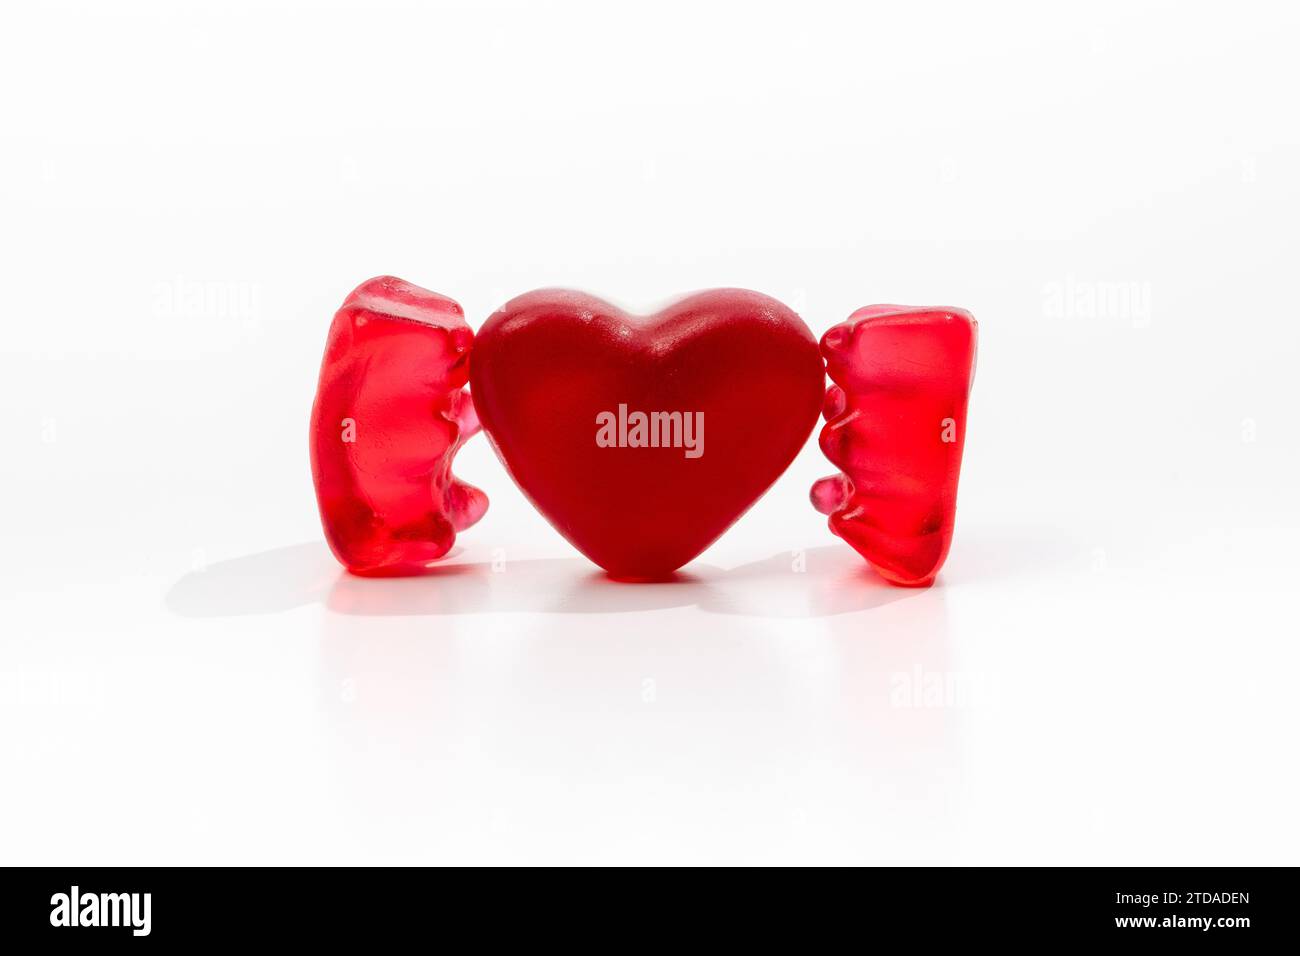 Concept d'amour avec ours Gummi et coeur rouge Banque D'Images